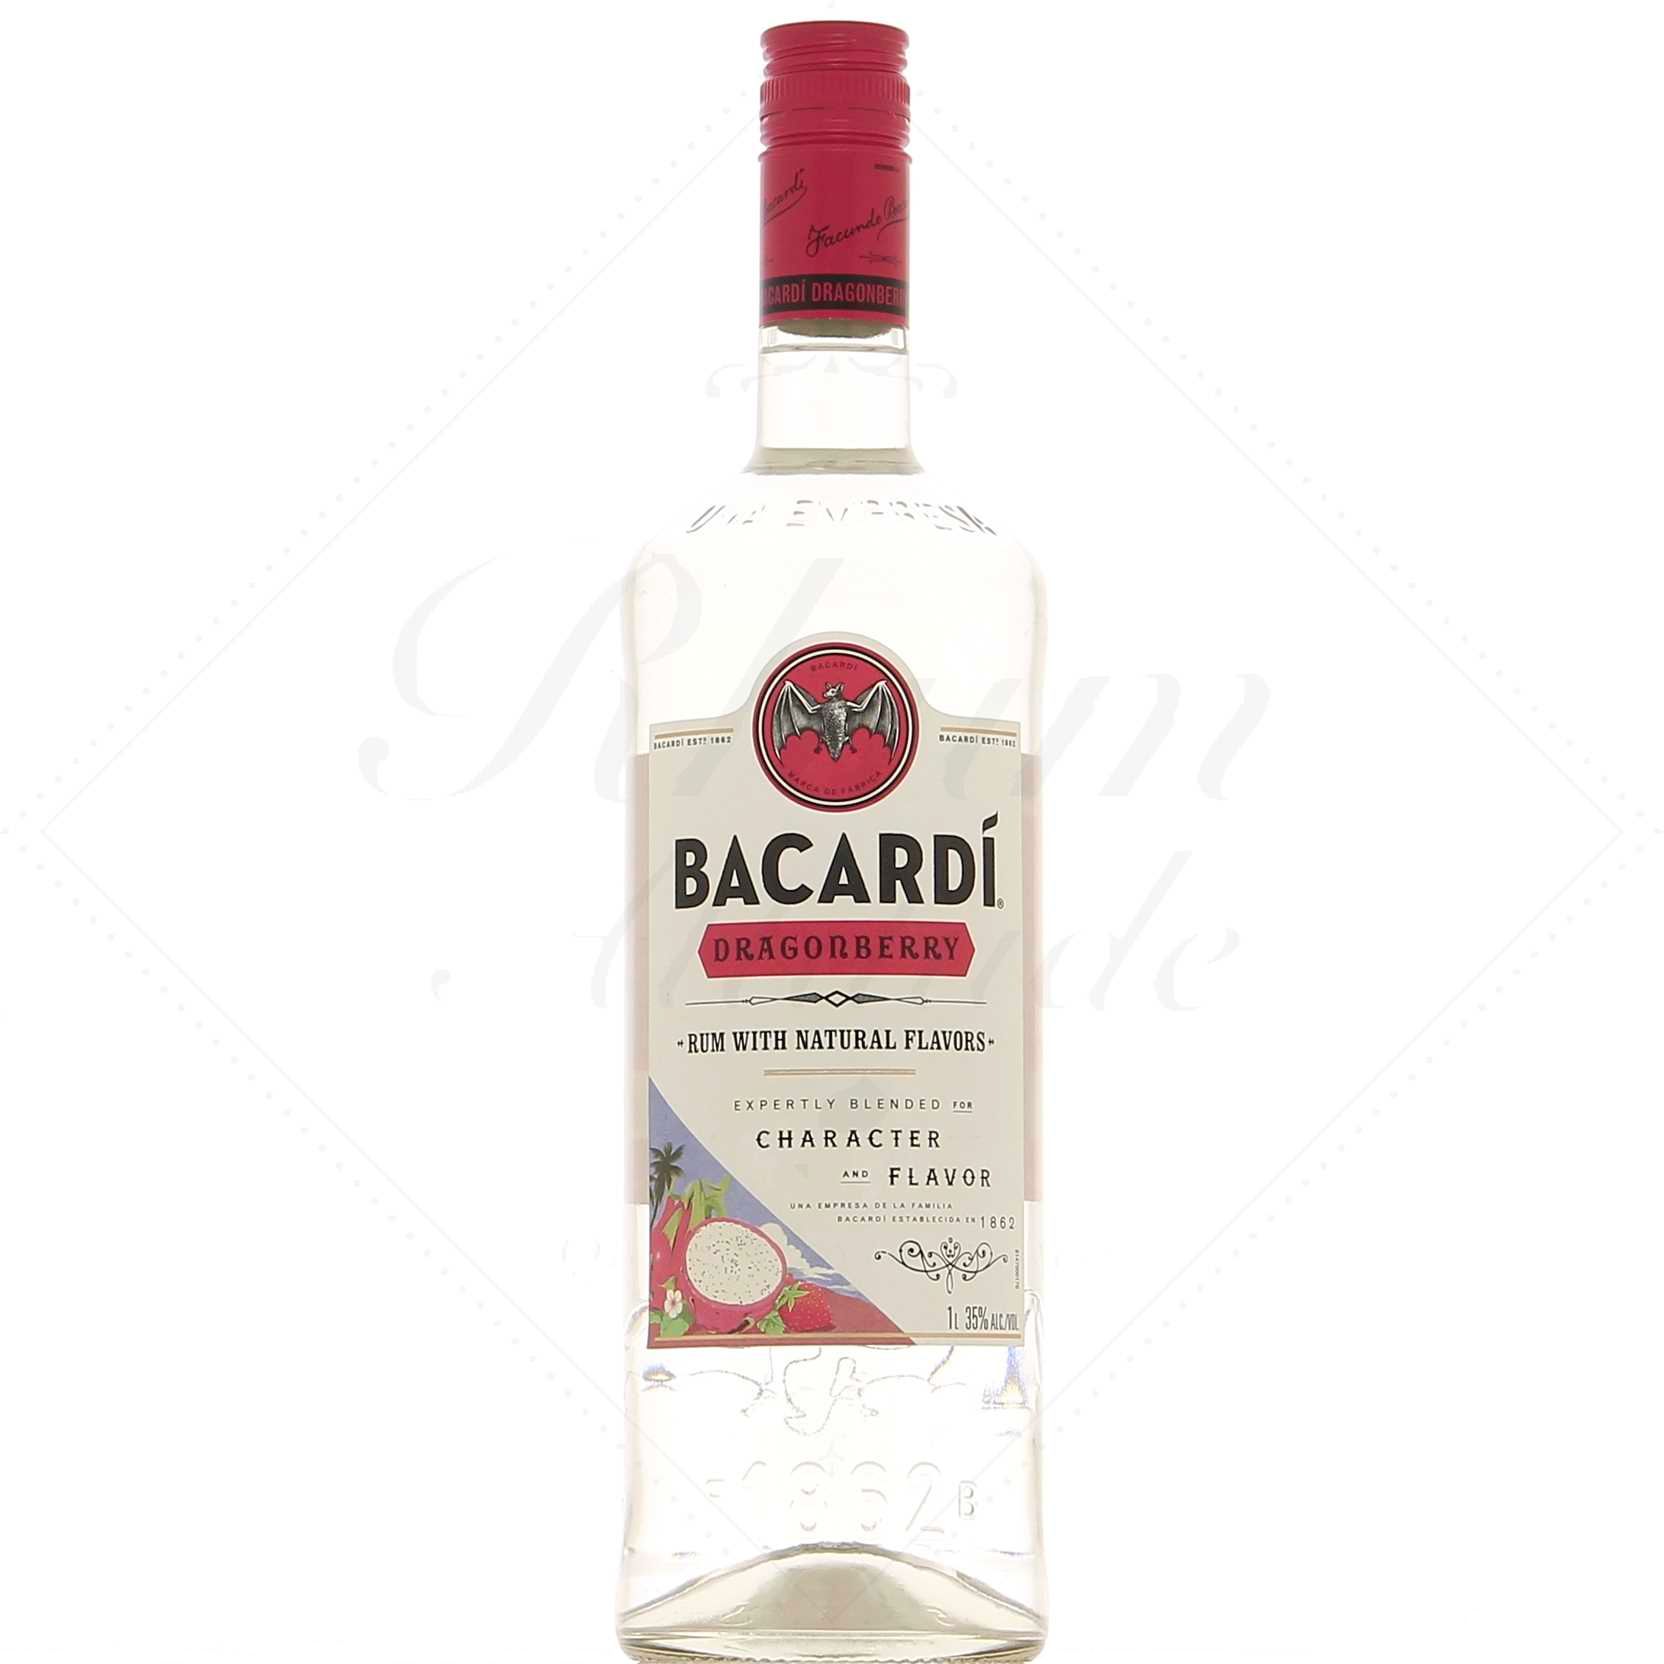 Бакарди 1 литр. Бакарди 1-129 пленка. Bacardi 1 литр carte Blanche. Bacardi Dragon Fruit.